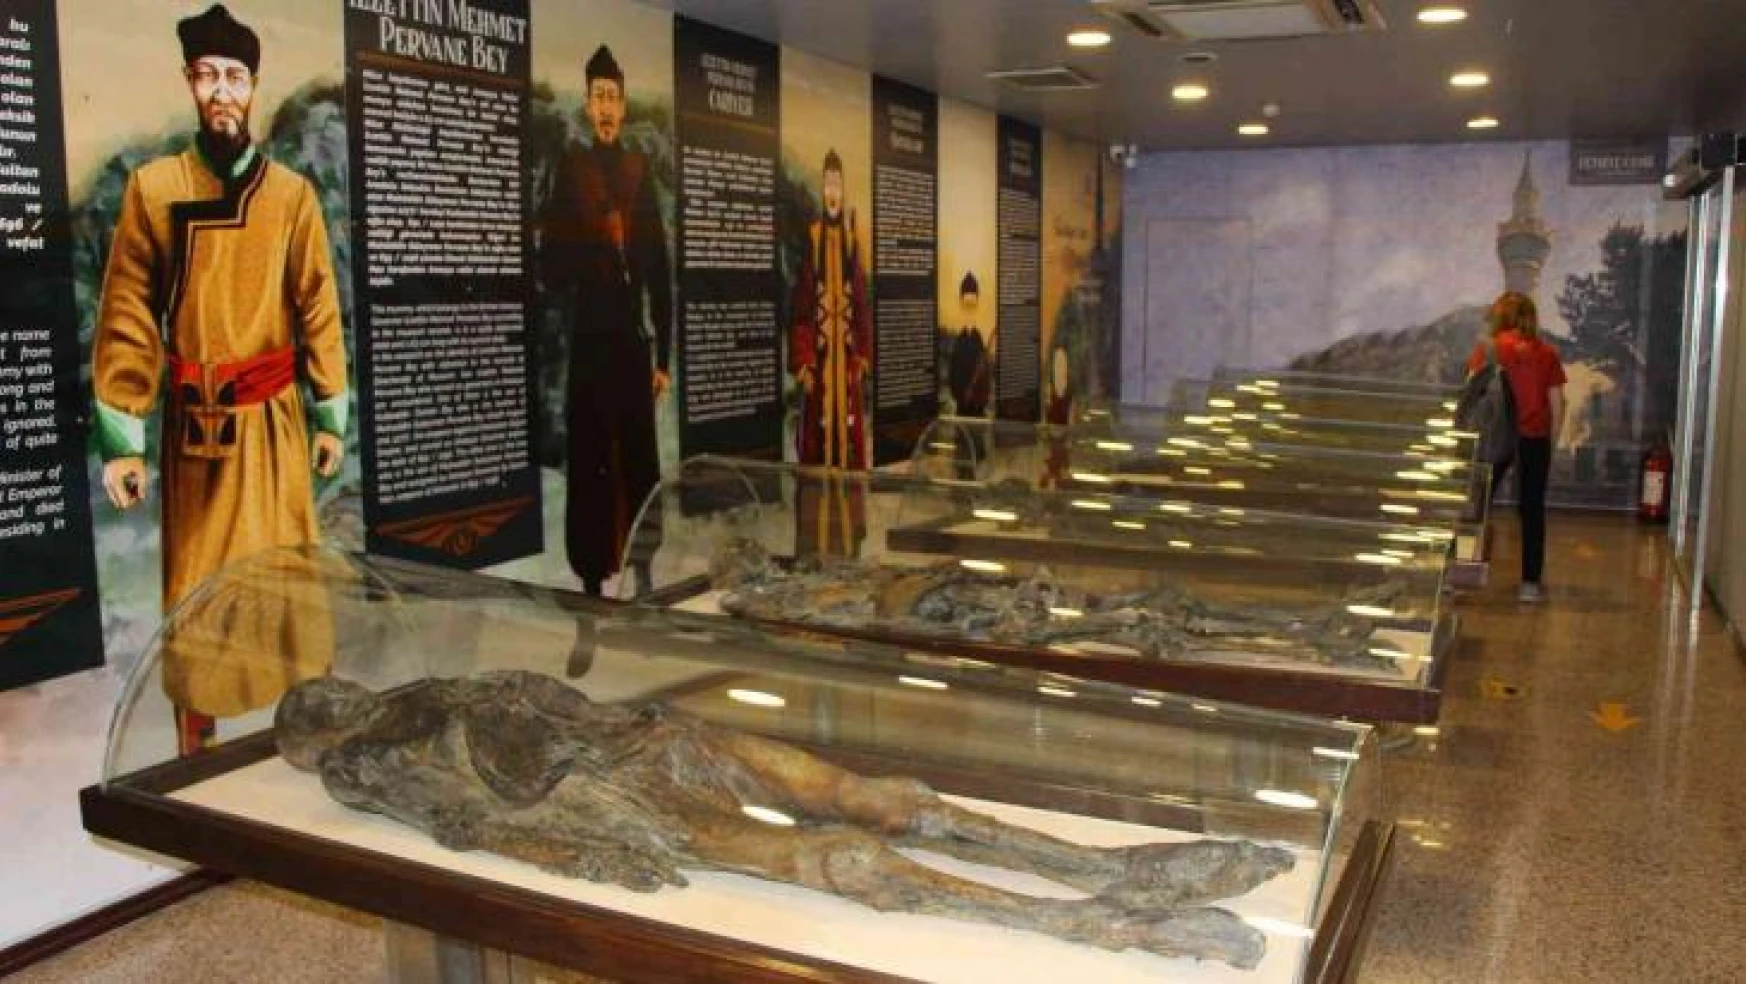 Türkiye'nin en büyük mumya ailesi